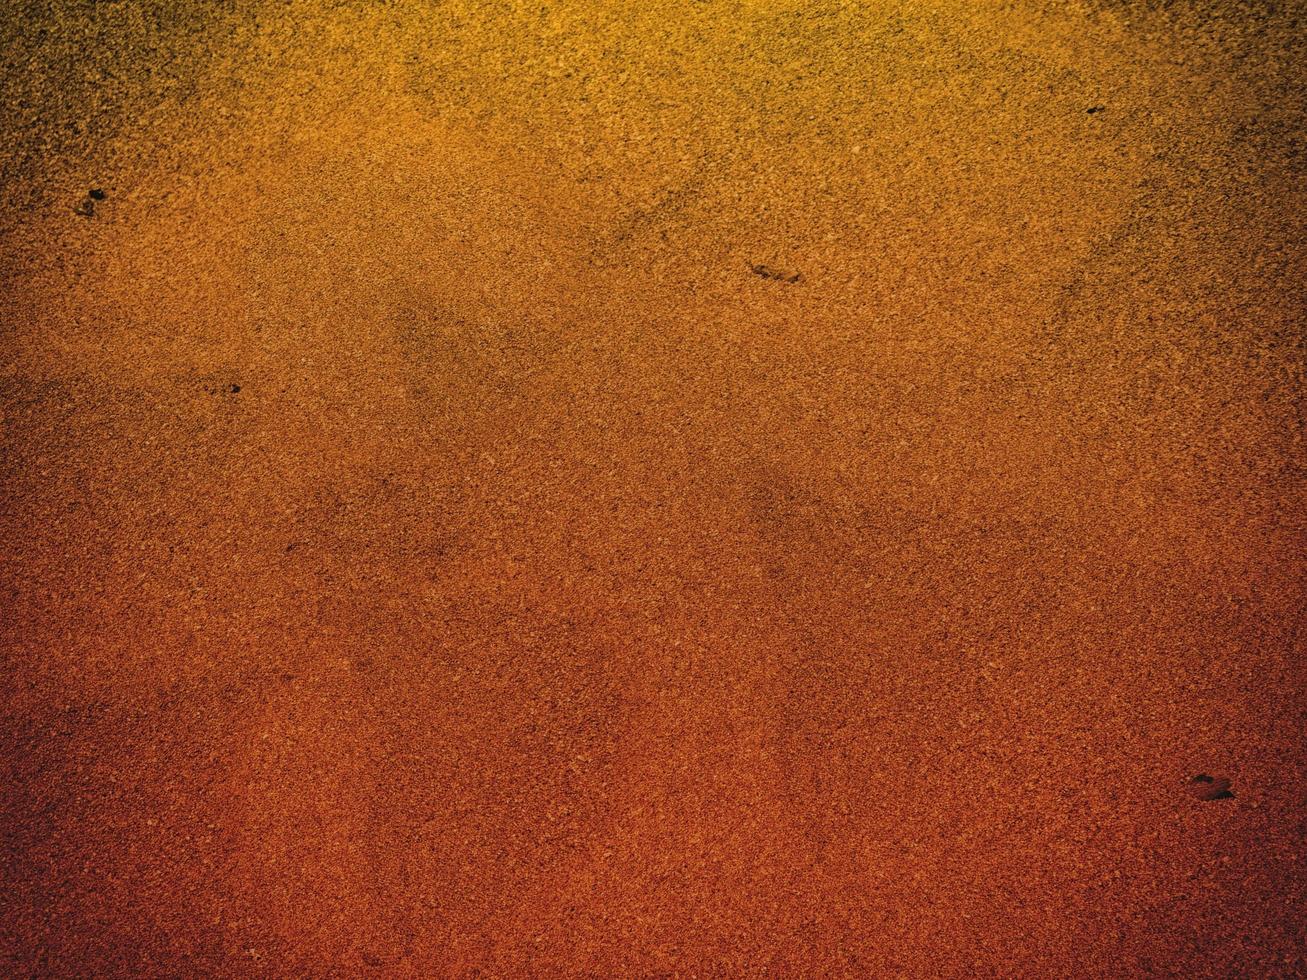 textura de arena al aire libre foto